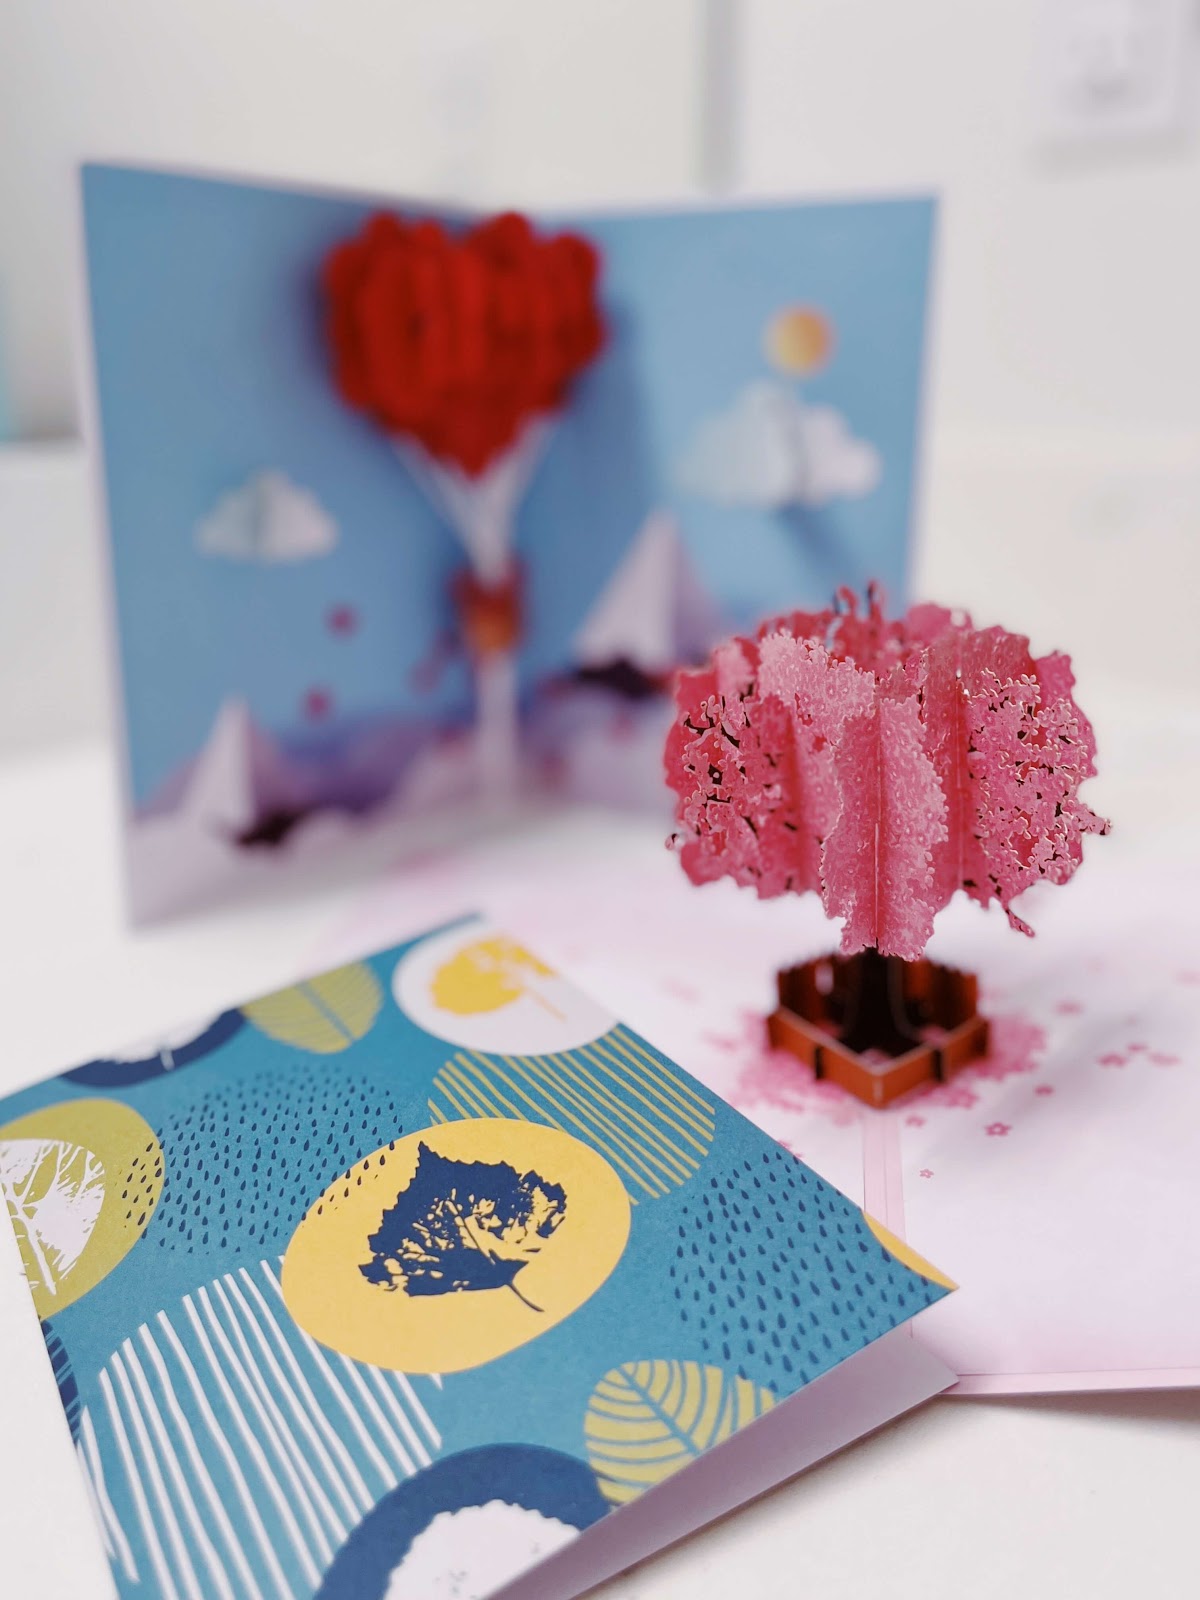 立体樱花树节日贺卡 3D-pop-up-card-blossom-occasions-holiday